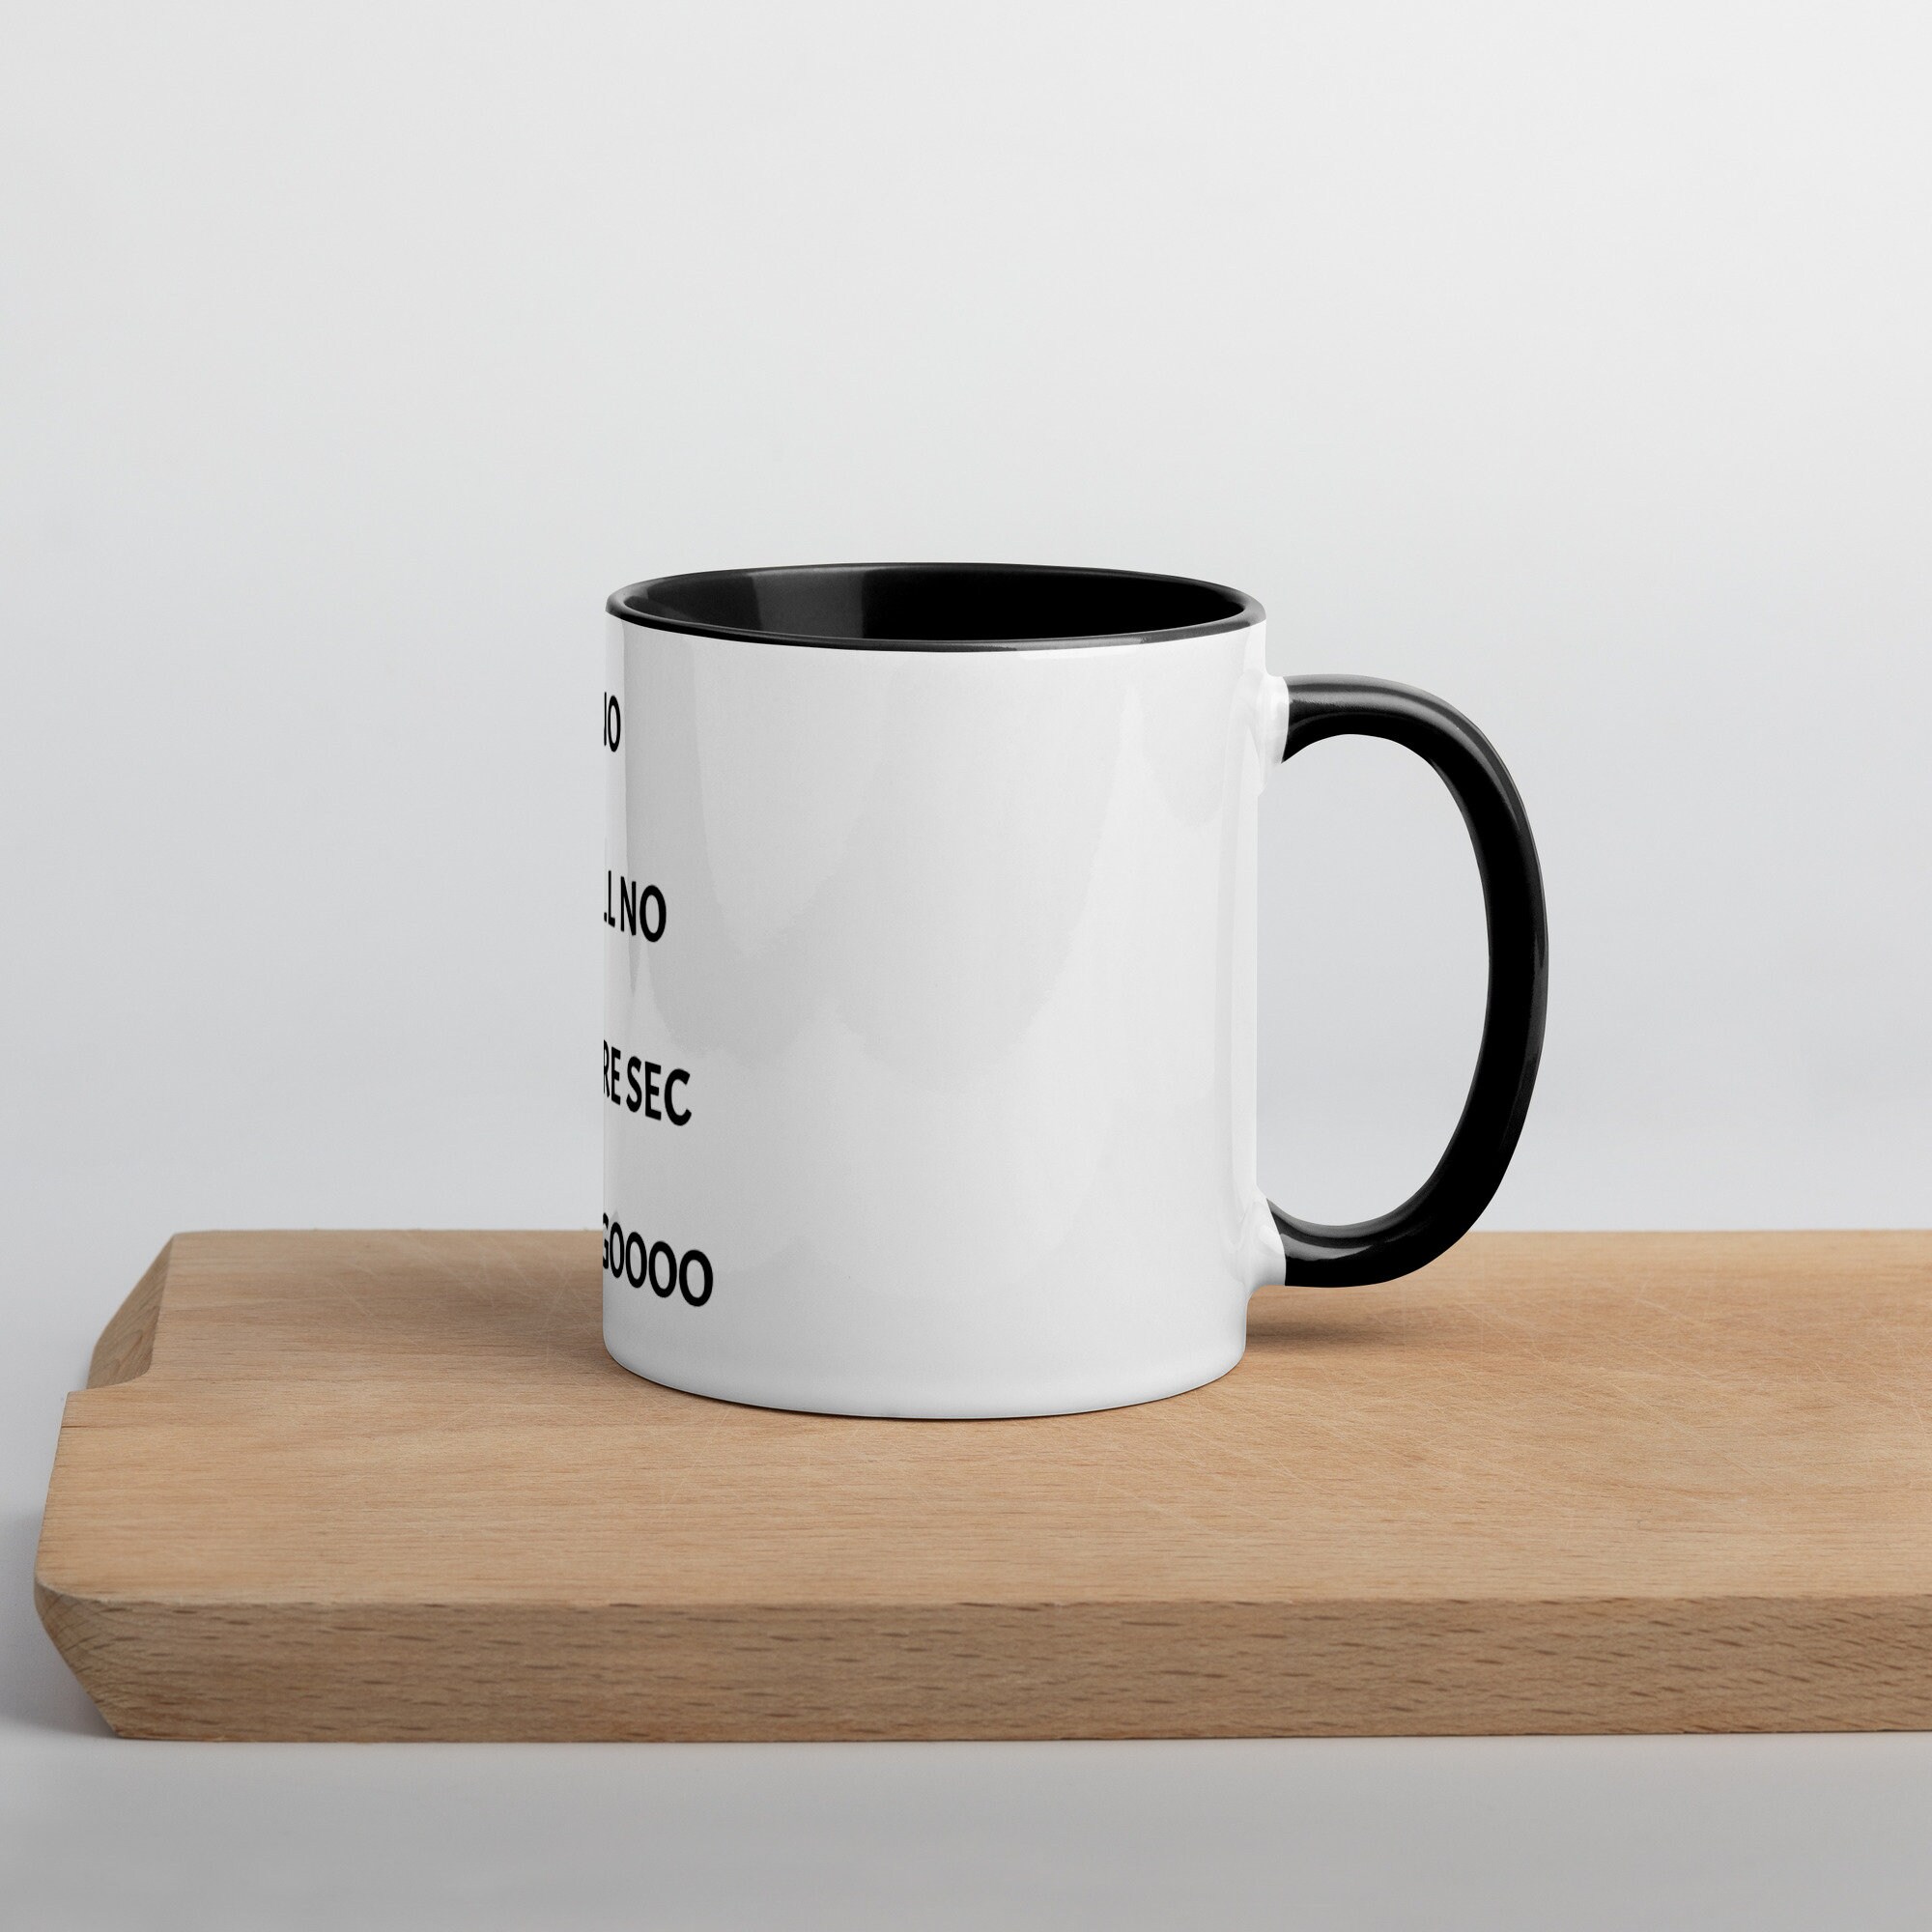 The Mug of Mugs 